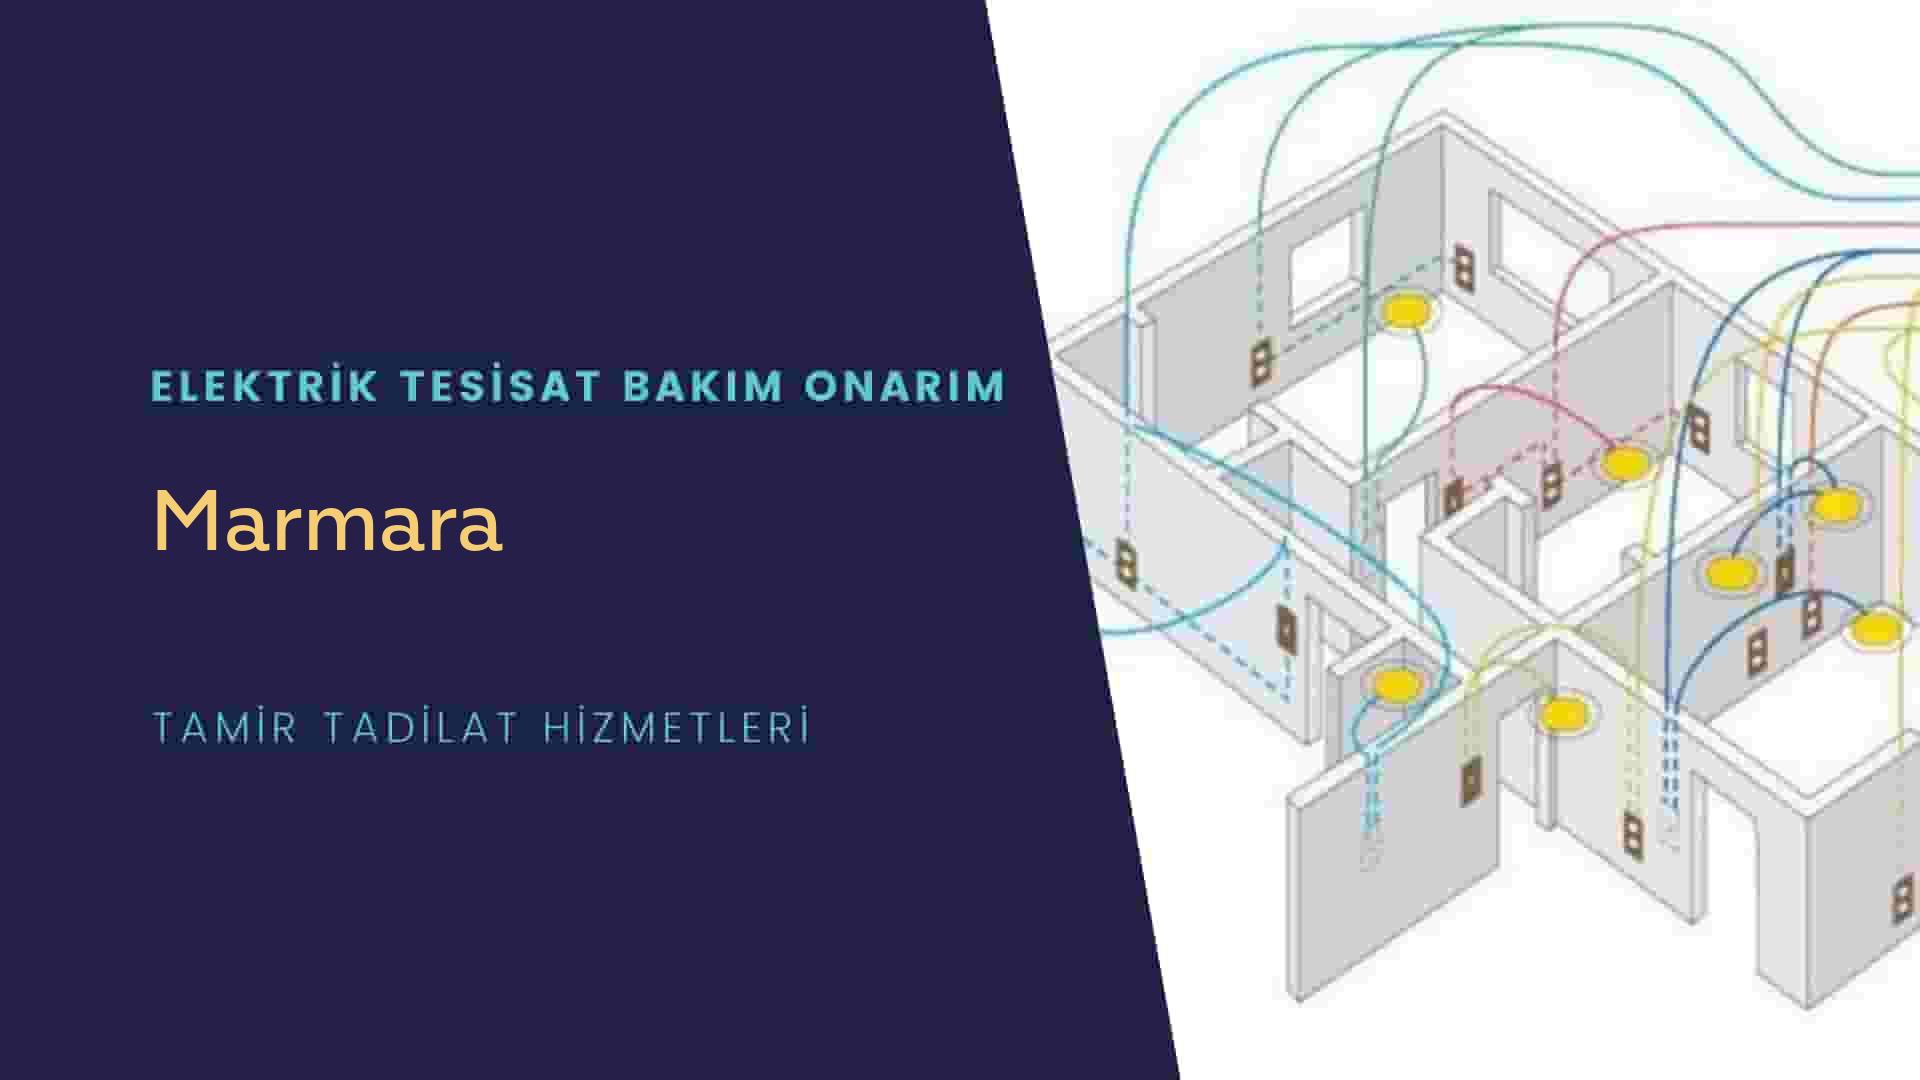 Marmara'da elektrik tesisatı ustalarımı arıyorsunuz doğru adrestenizi Marmara elektrik tesisatı ustalarımız 7/24 sizlere hizmet vermekten mutluluk duyar.